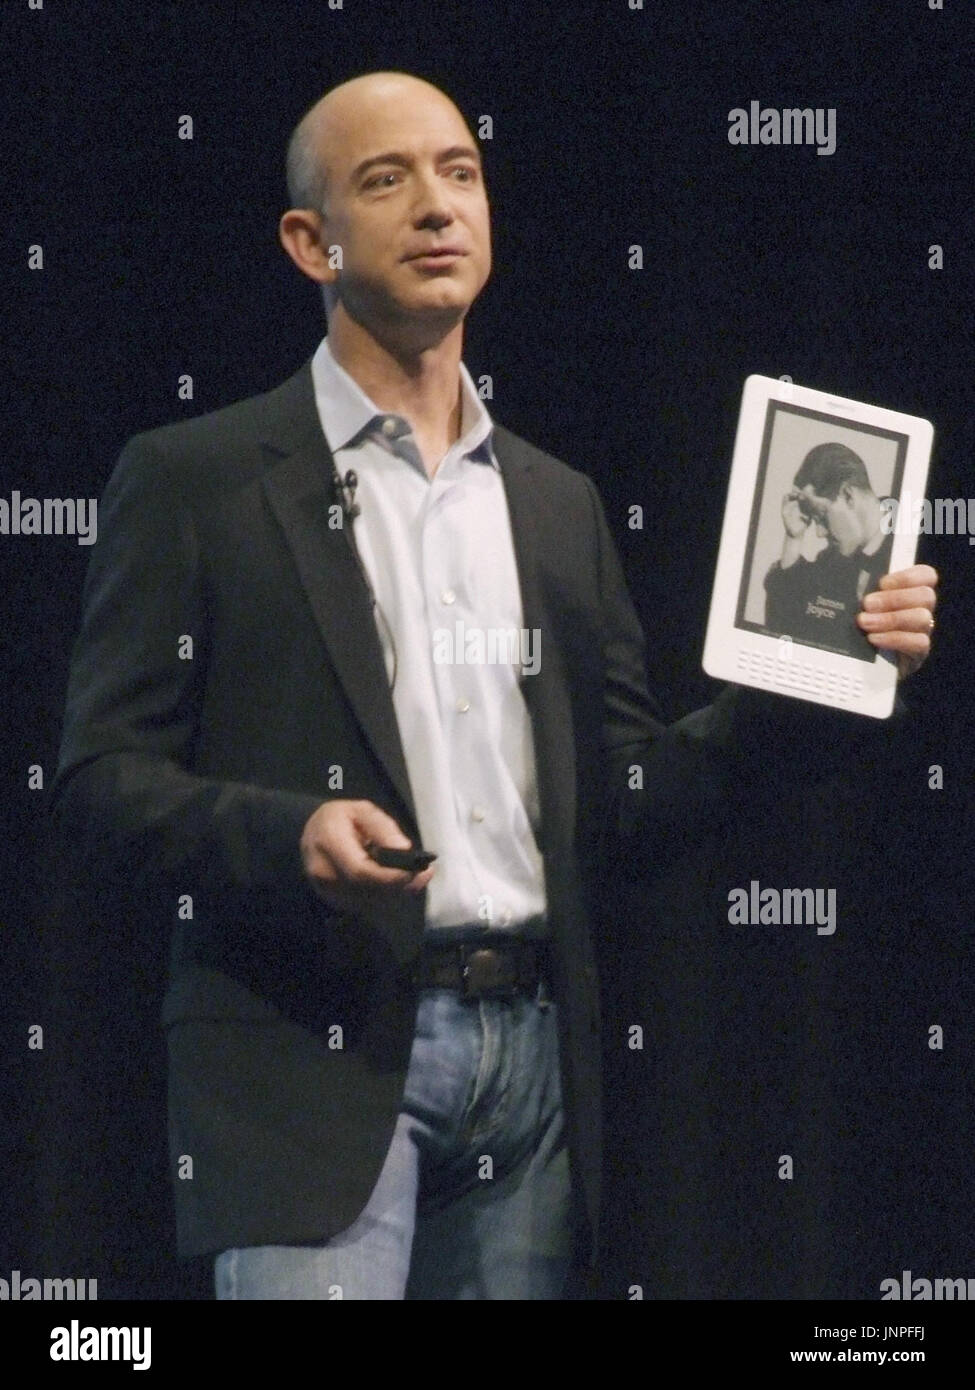 NEW YORK, Stati Uniti - CEO di Amazon.com di Jeff Bezos detiene il nuovo  Kindle DX lettore elettronico durante una conferenza stampa a New York il 6  maggio. Il nuovo dispositivo, il